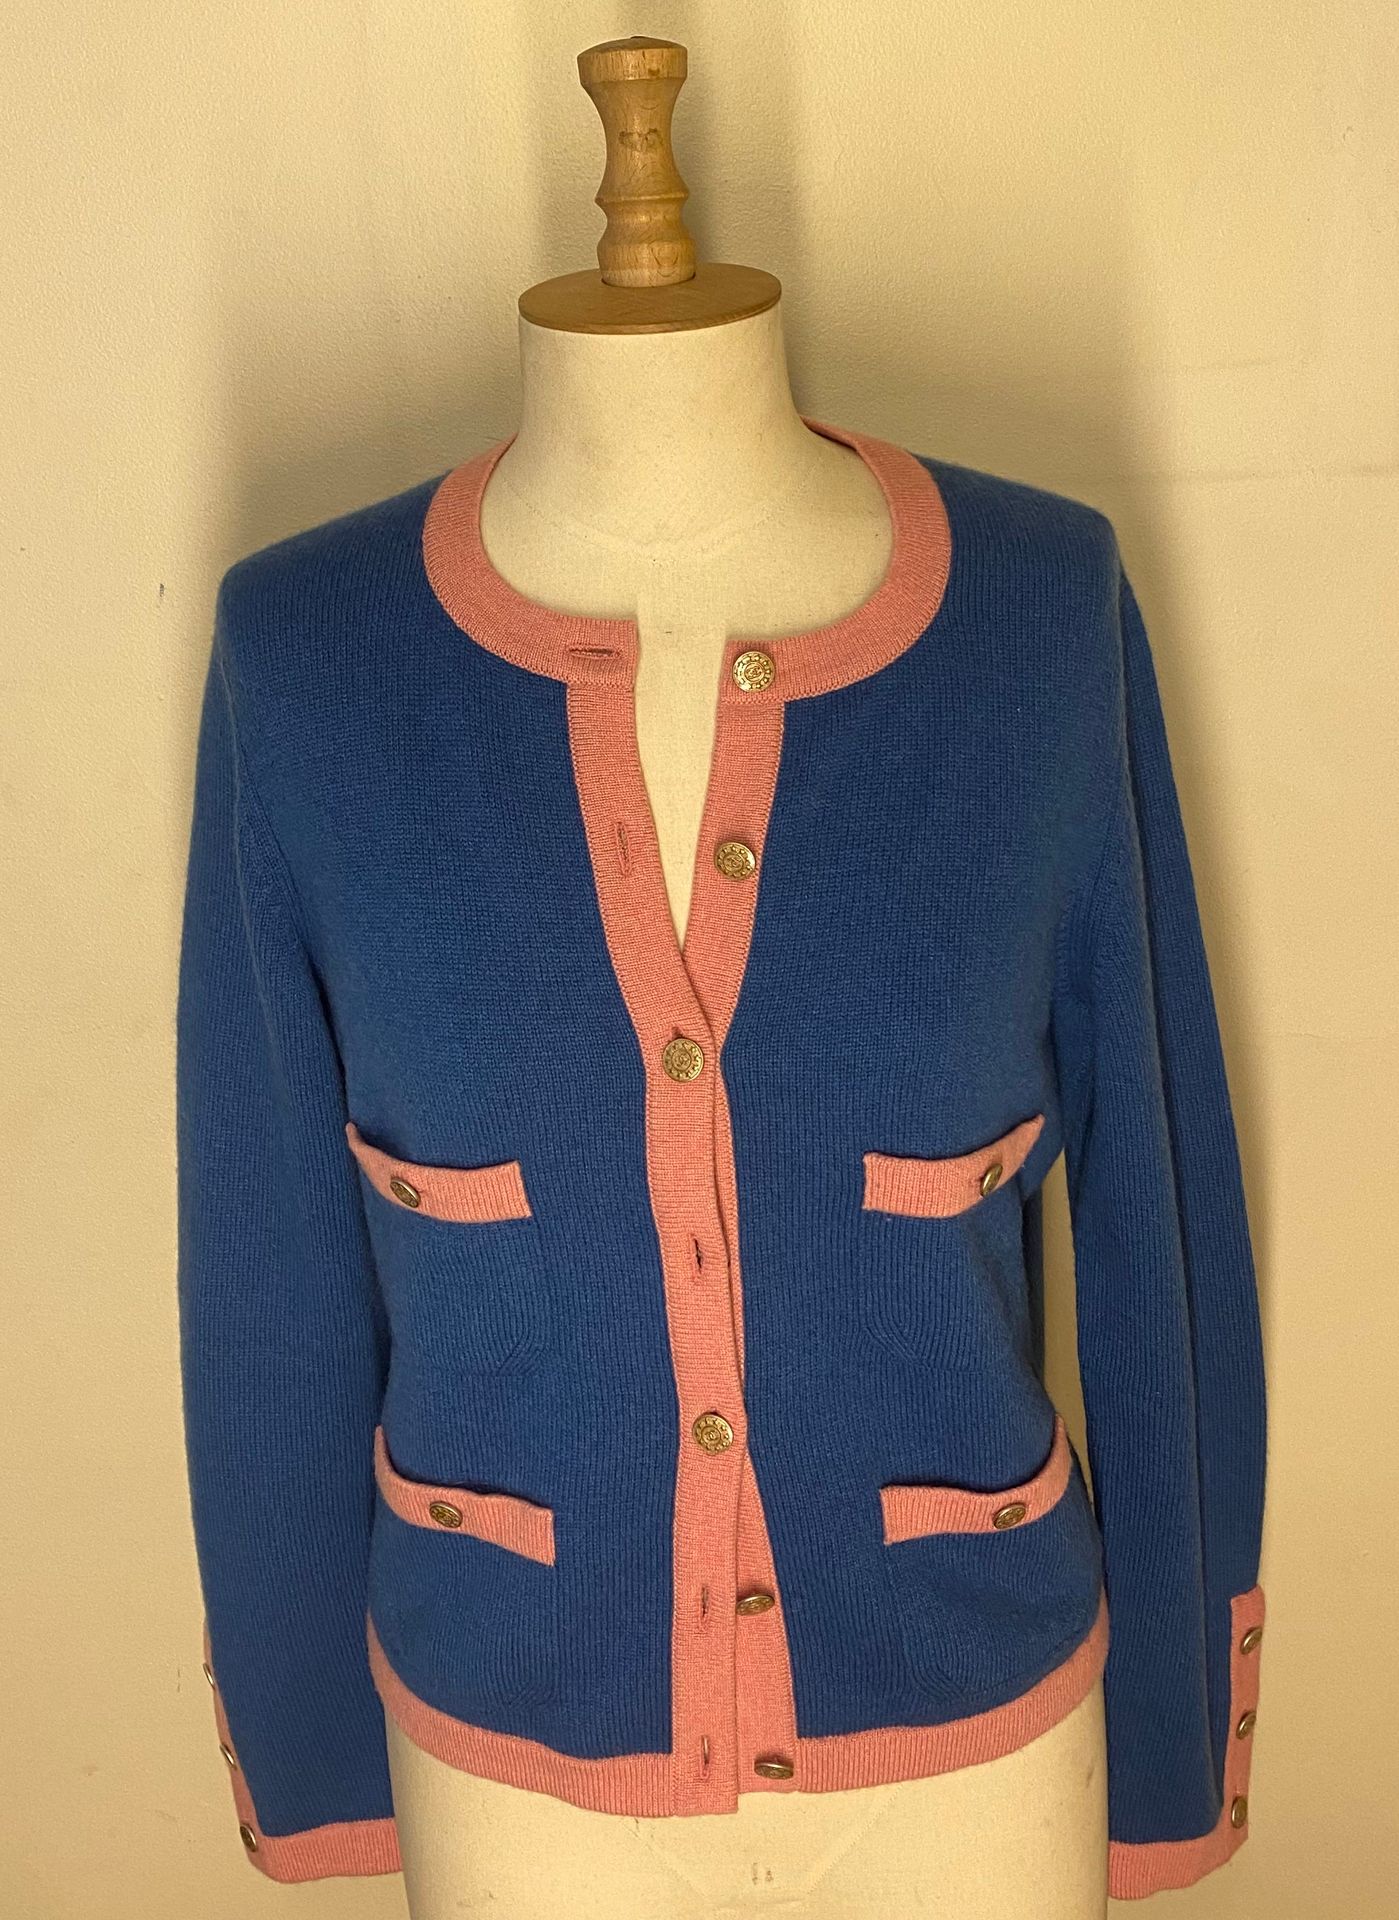 Null 香奈儿 英国制造

粉红色和蓝色羊绒开衫，有字母图案的纽扣。尺寸40

(小污点)



拍卖会将于2021年12月20日（星期一）在巴黎第十五区举行&hellip;